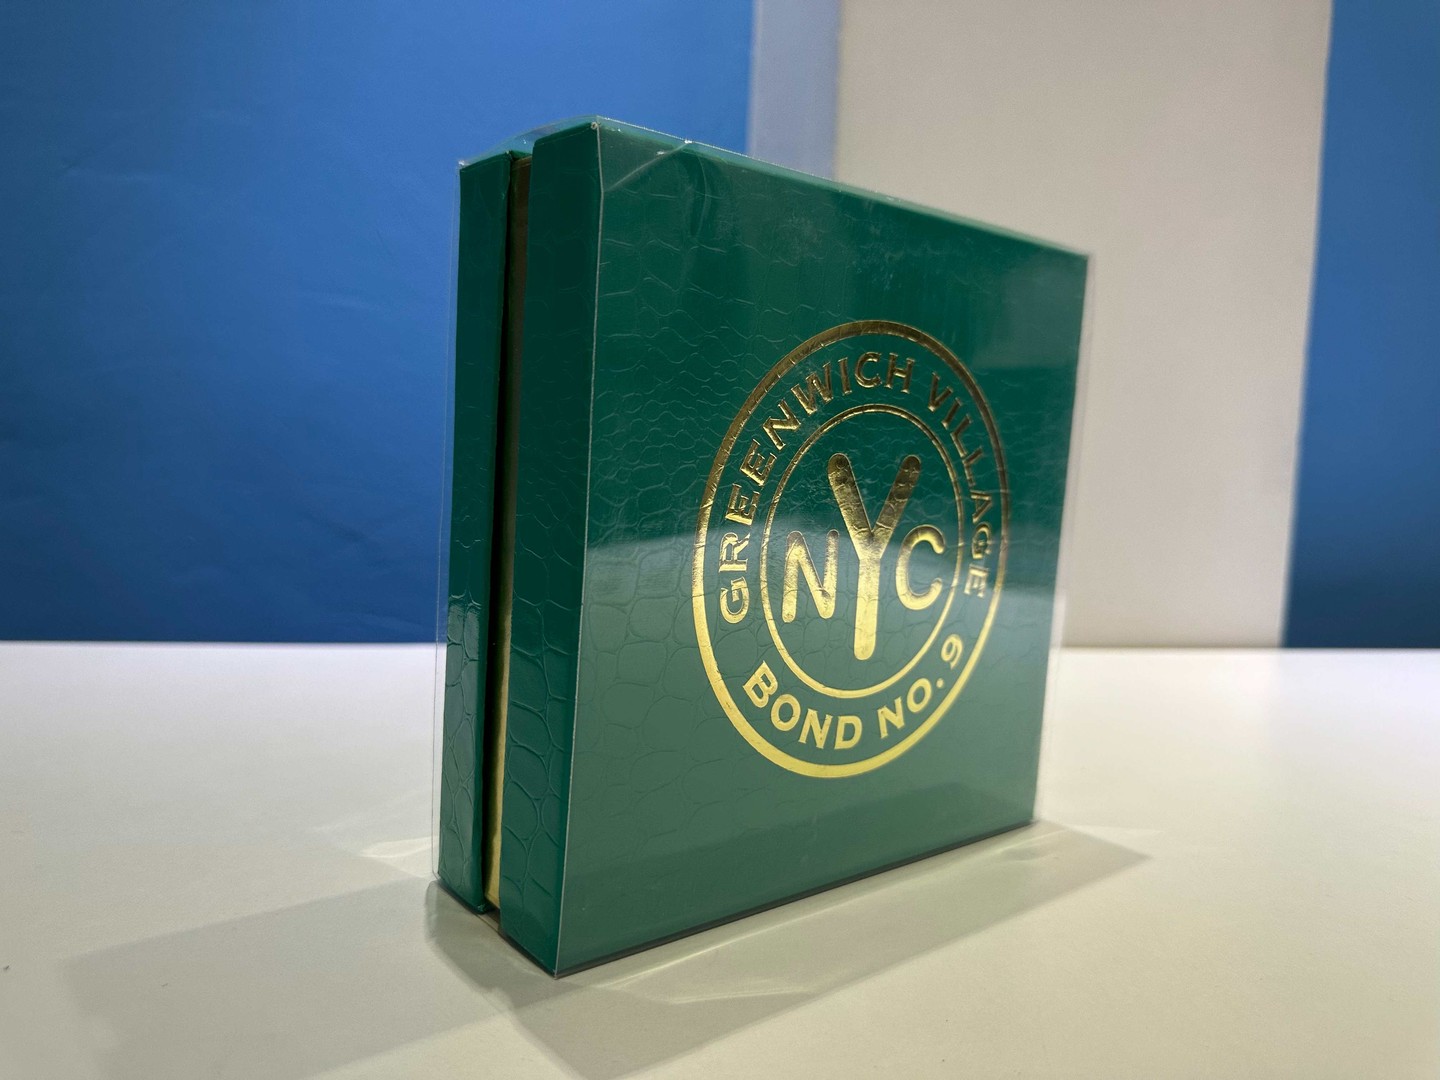 joyas, relojes y accesorios - Vendo Perfumes BOND NO.9 - Greenwich Village - Nuevos - Originales $ 18,500 NEG